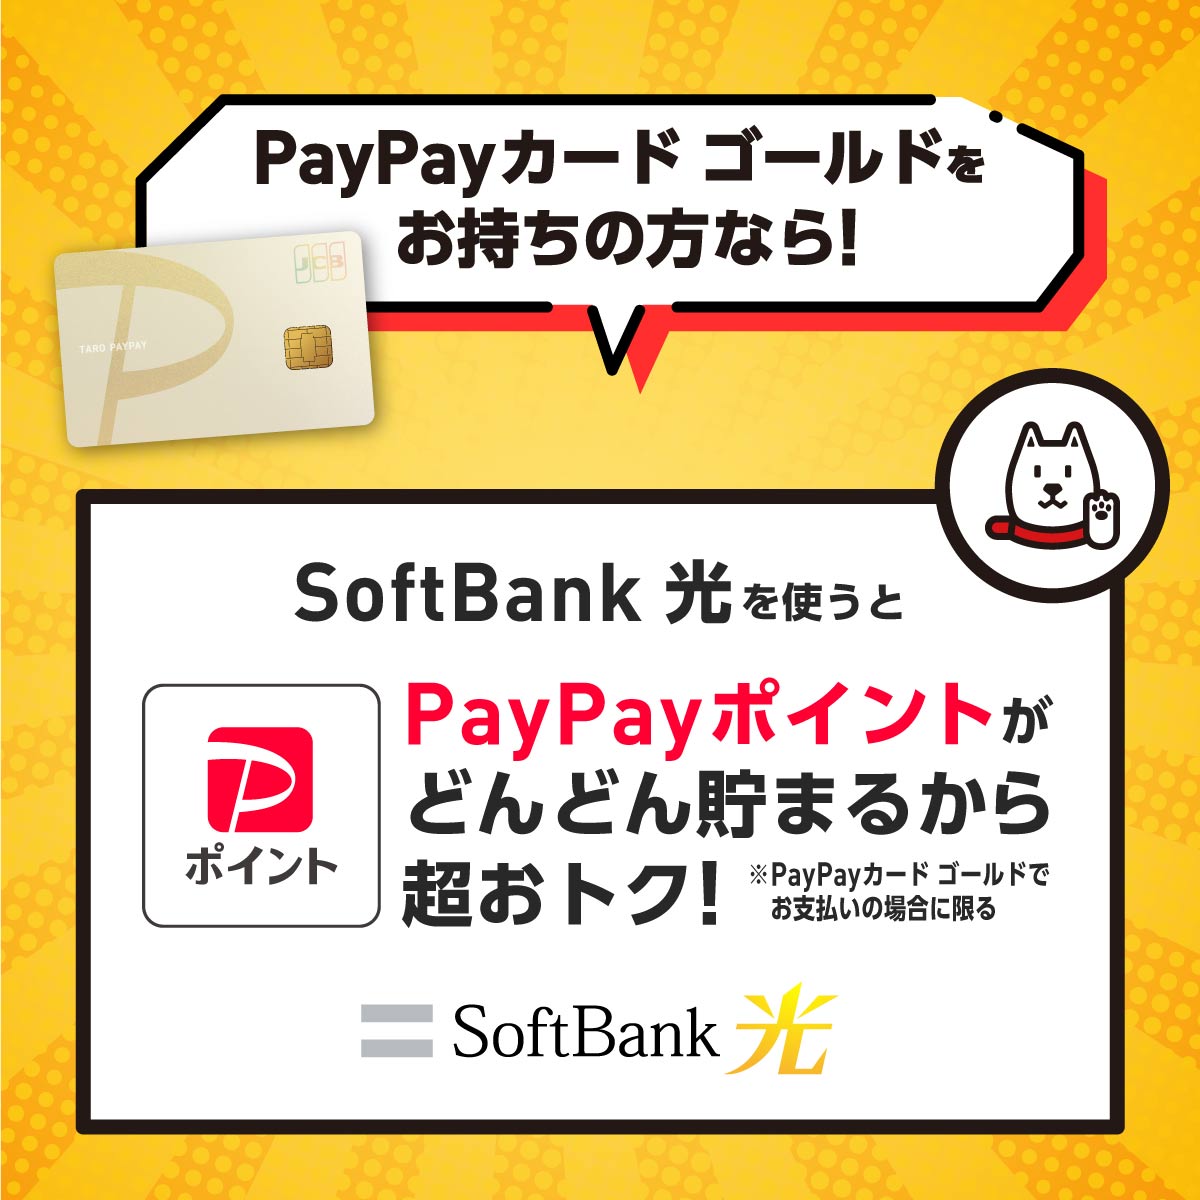 PayPayカード ゴールドをお持ちの方なら!_ソフトバンク